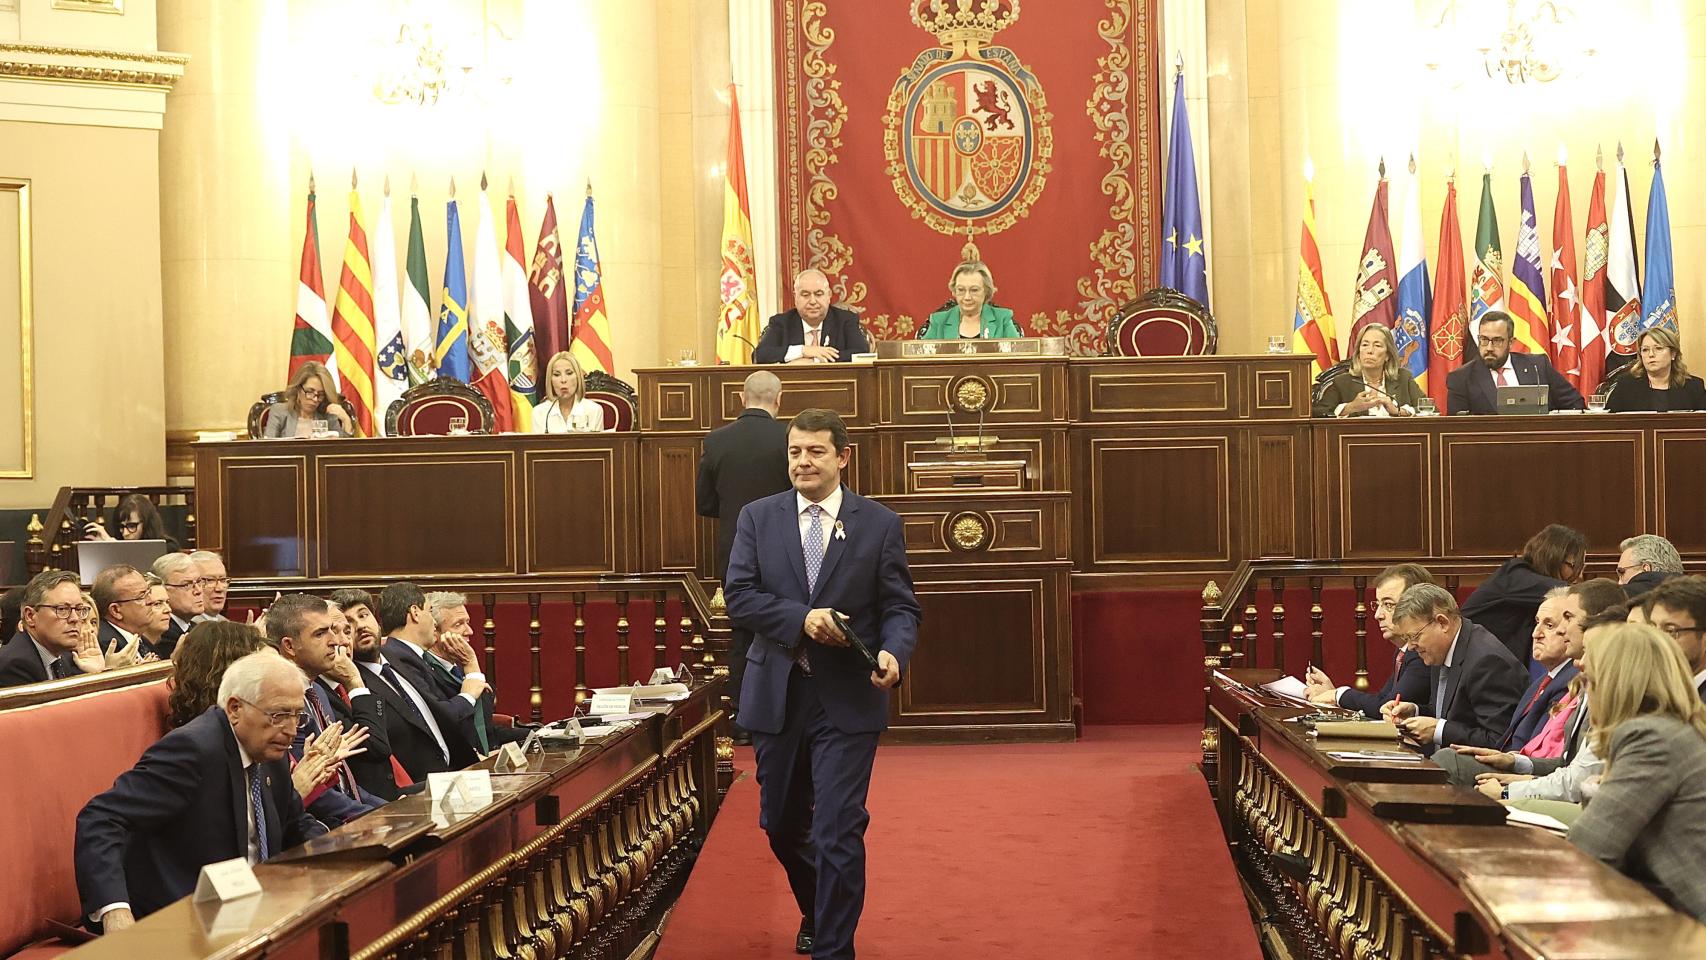 El presidente de la Junta de Castilla y León, Alfonso Fernández Mañueco, interviene en la sesión de la Comisión General de las Comunidades Autónomas en el Senado